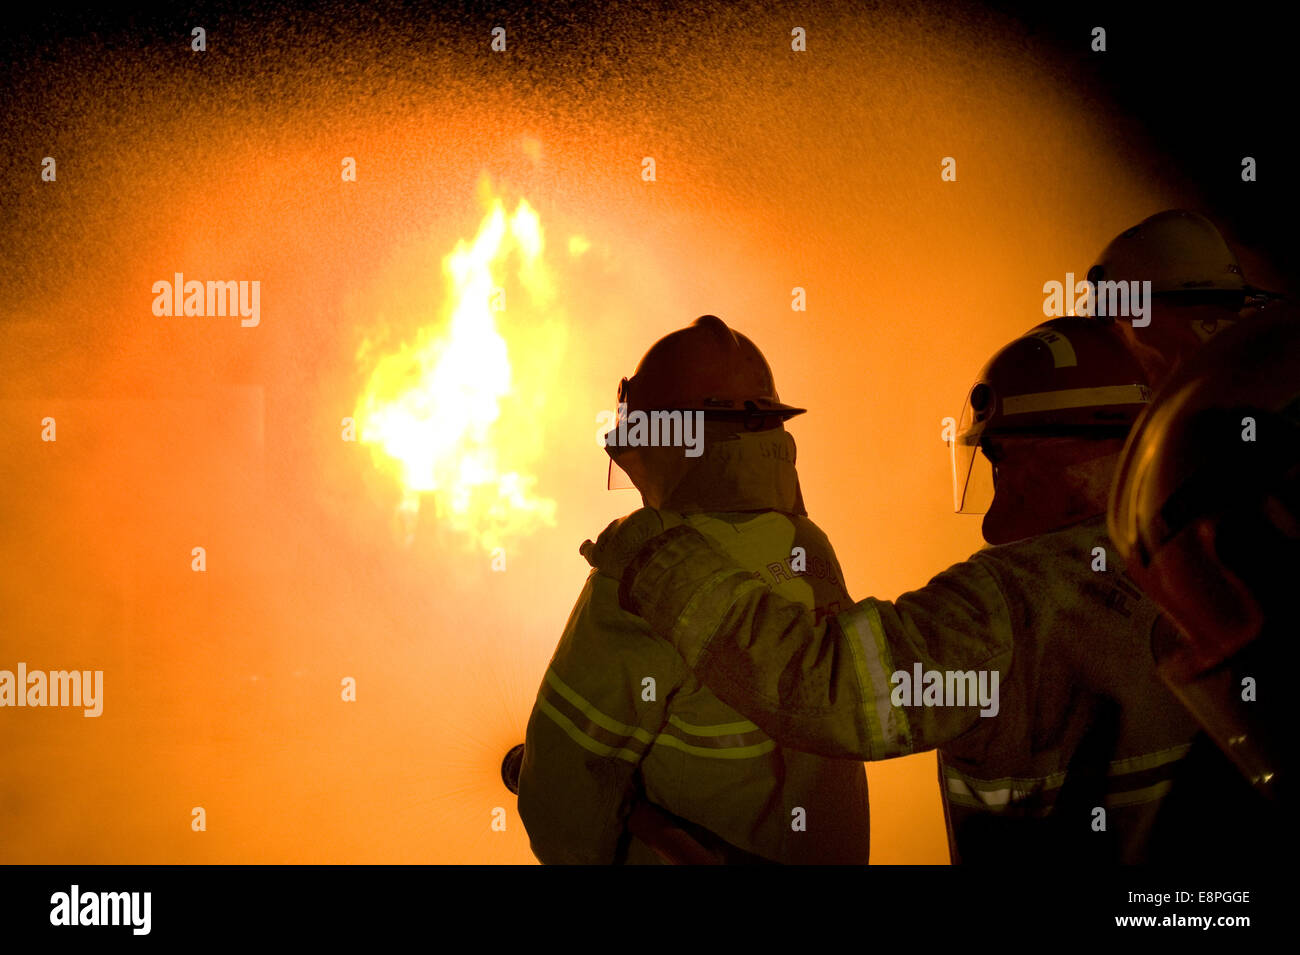 Les pompiers s'attaquent à un feu de gaz Banque D'Images